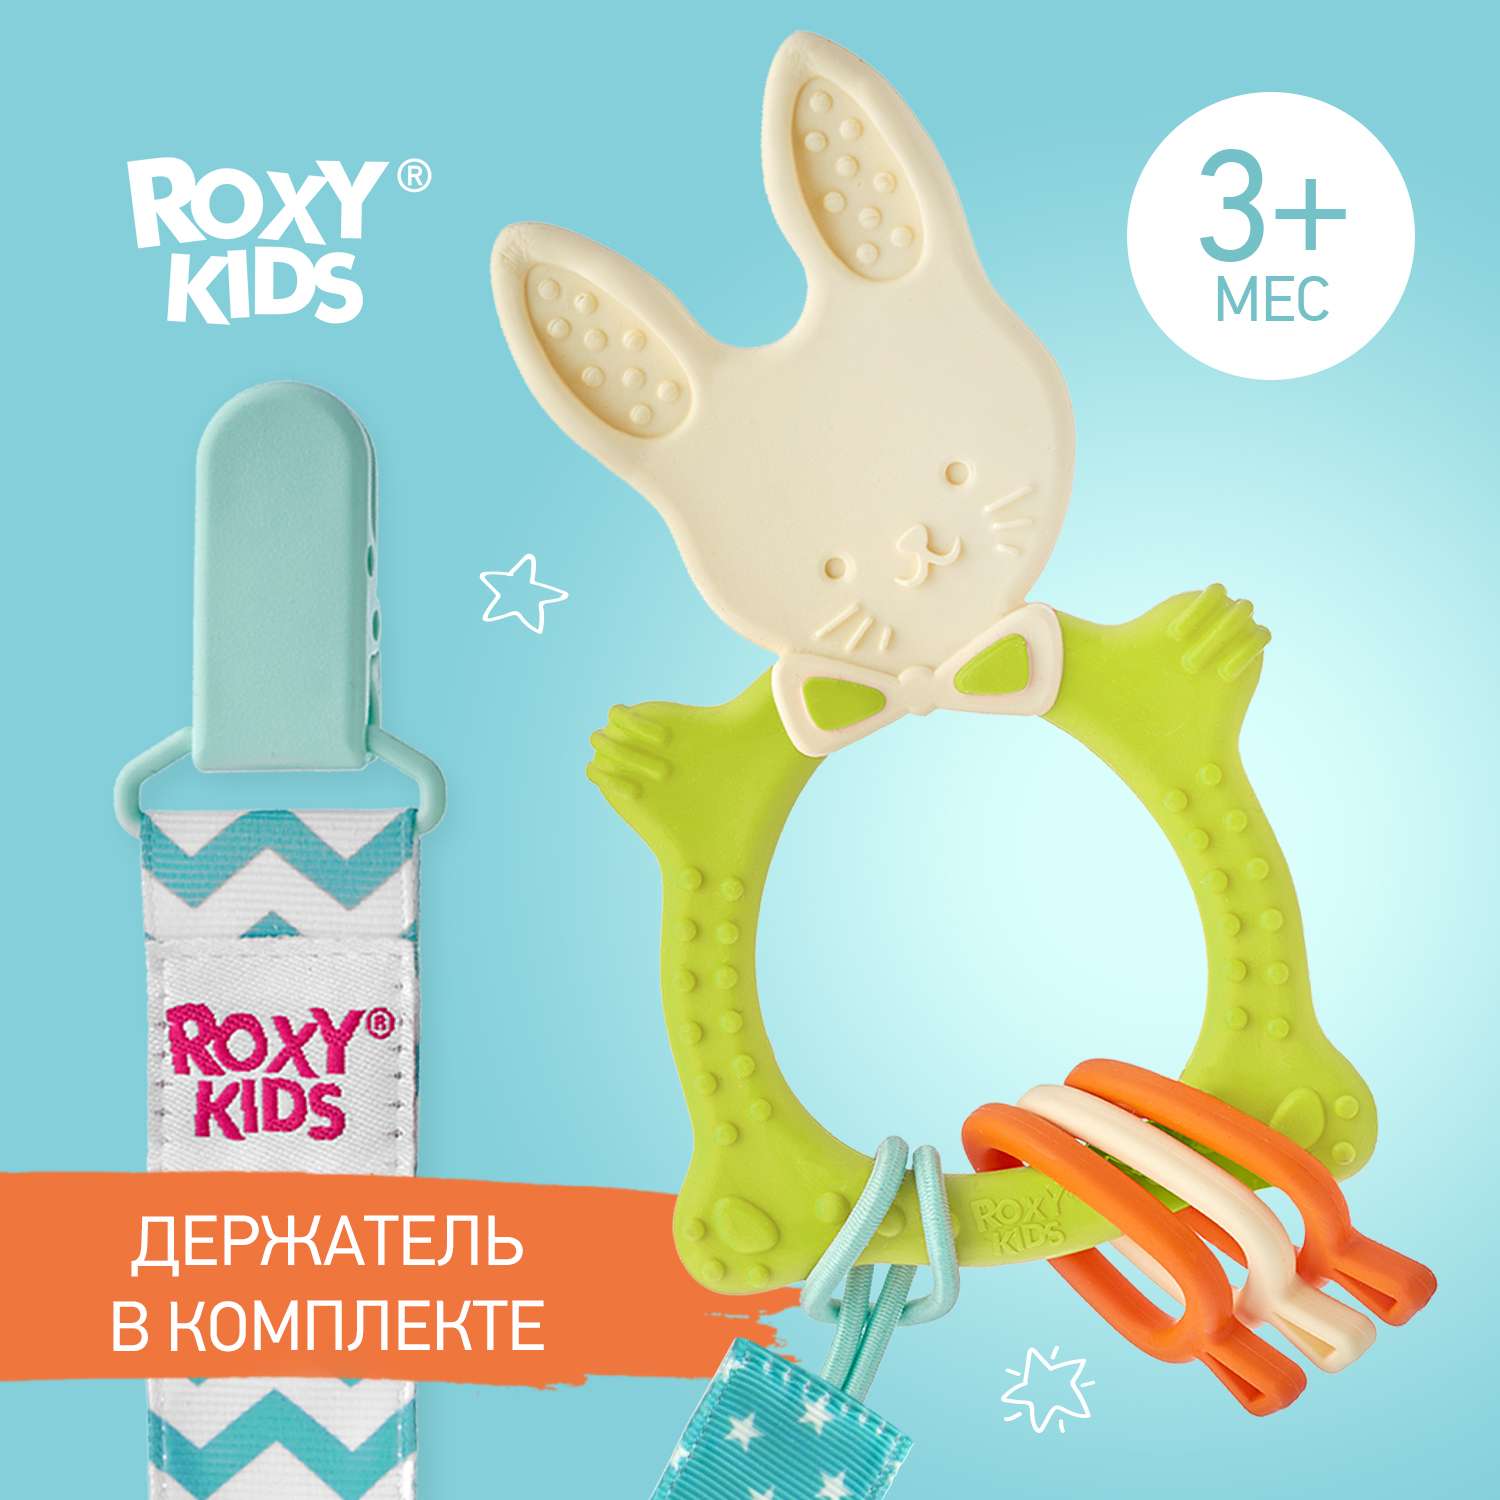 Прорезыватель ROXY-KIDS Bunny teether универсальный на держателе цвет зеленый - фото 1